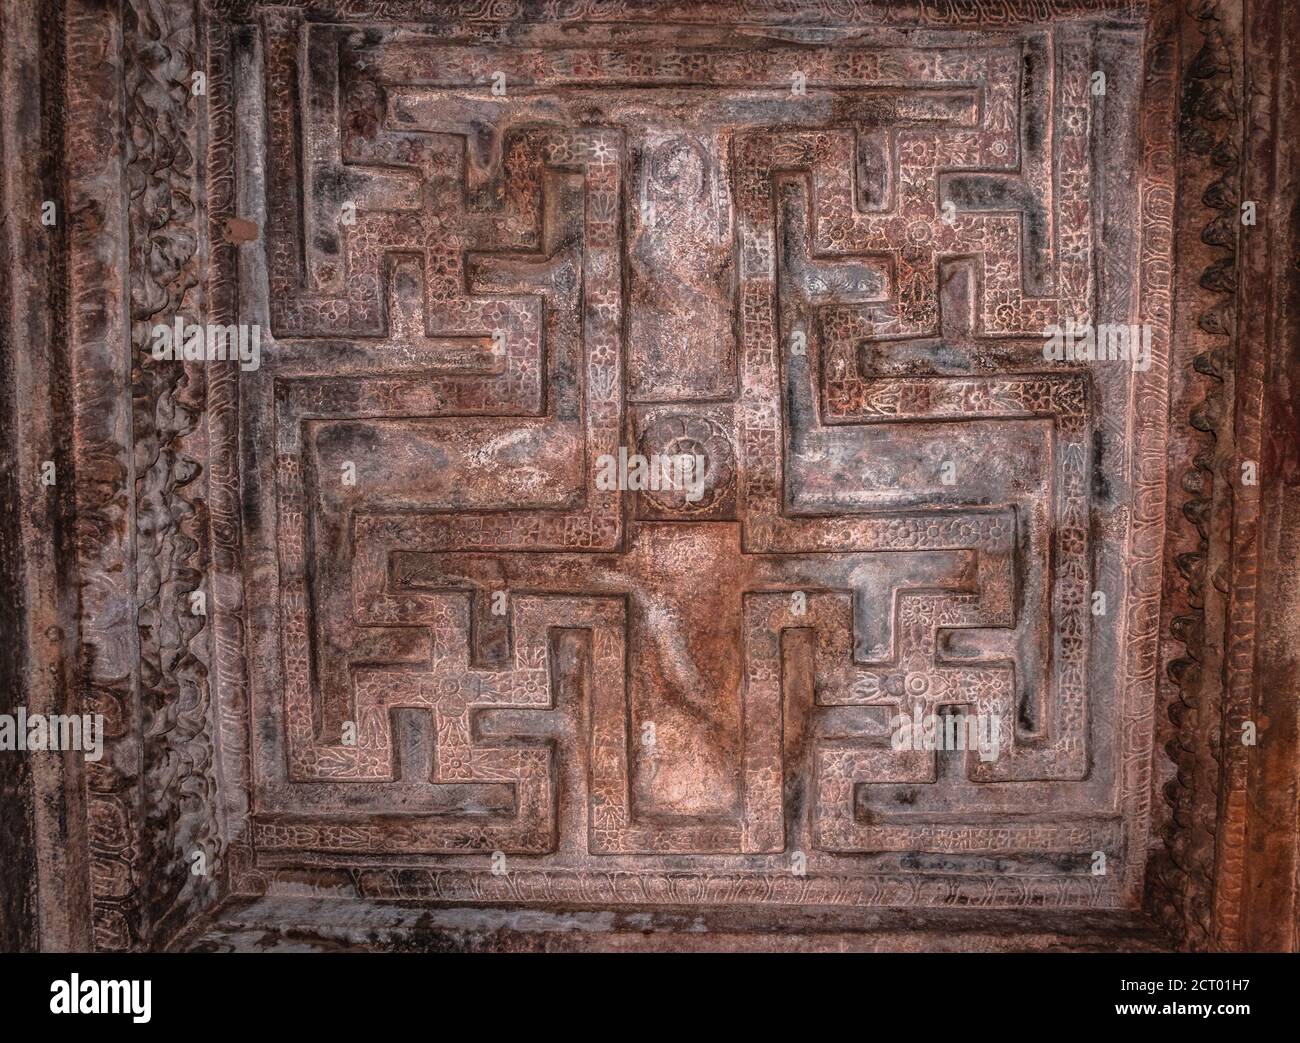 badami esculturas cueva diseño tallado en el techo antiguo arte de piedra en los detalles la imagen se toma en badami karnataka india, es patrimonio de la unesco y pla Foto de stock